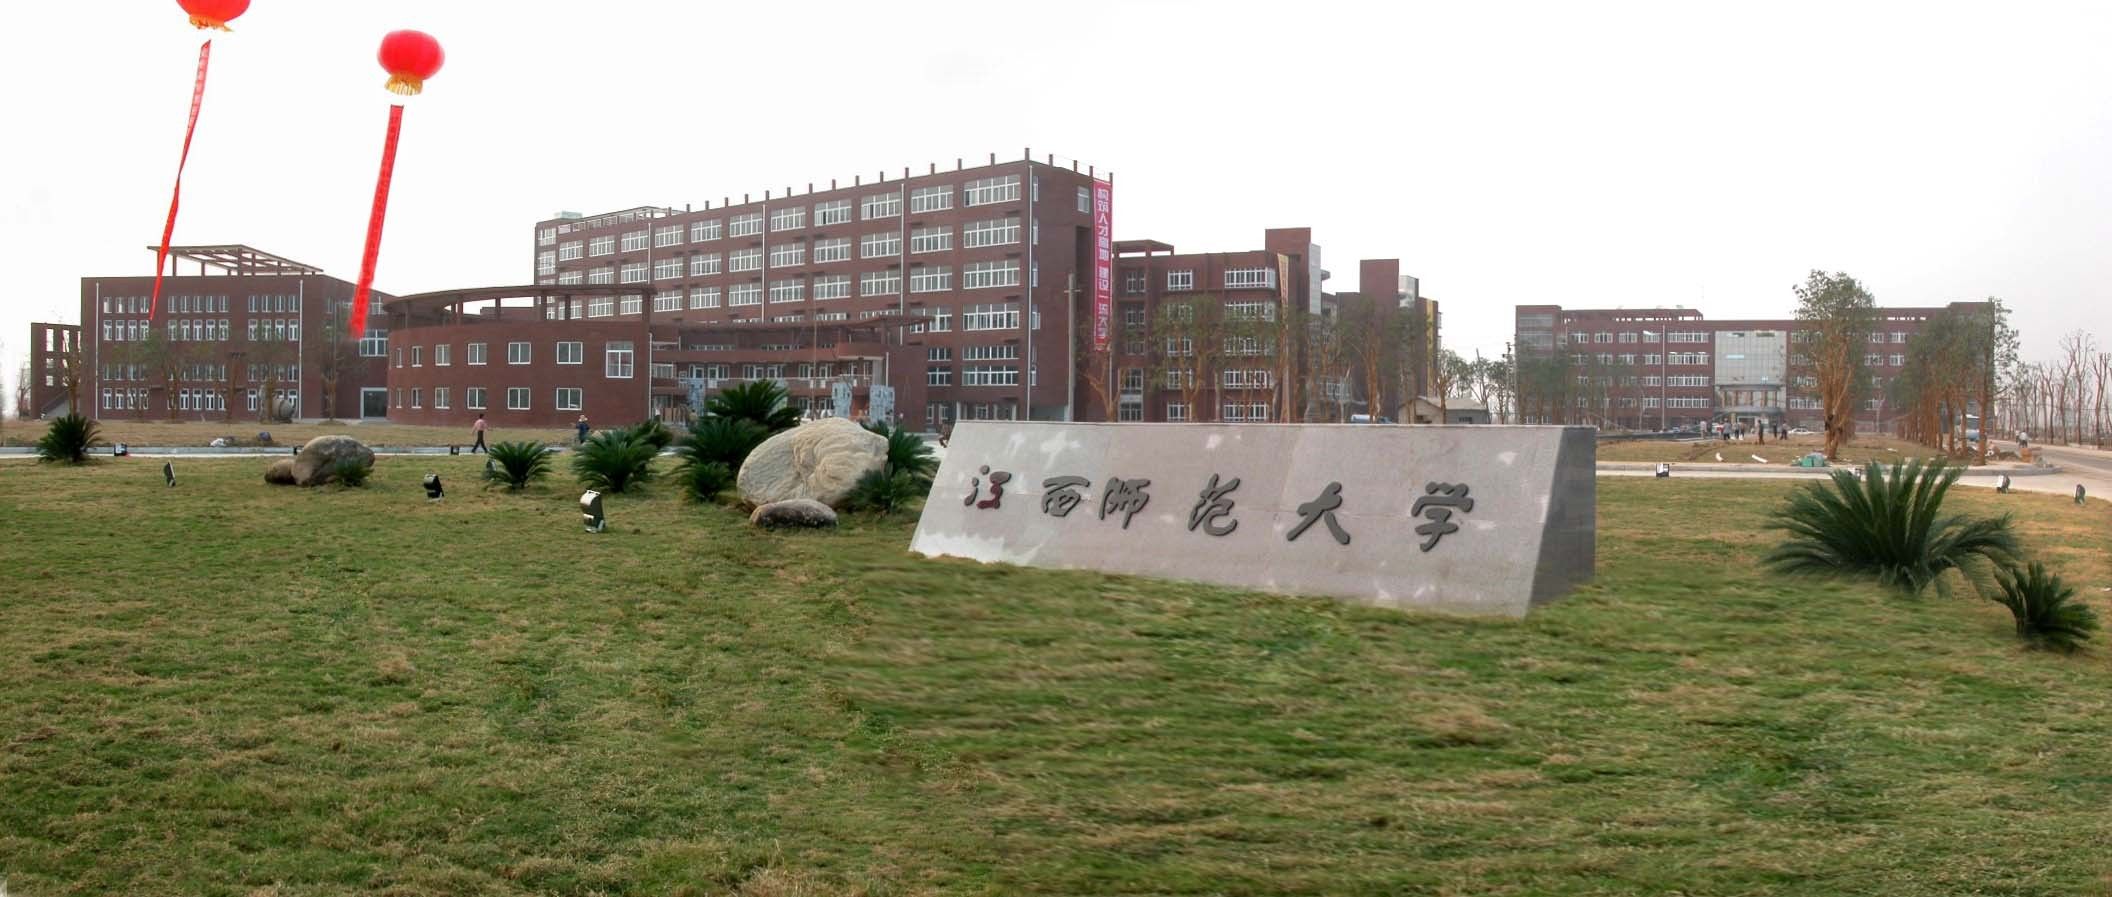 在南昌上大学:细数英雄之城南昌的5所特色高校:江西师范大学